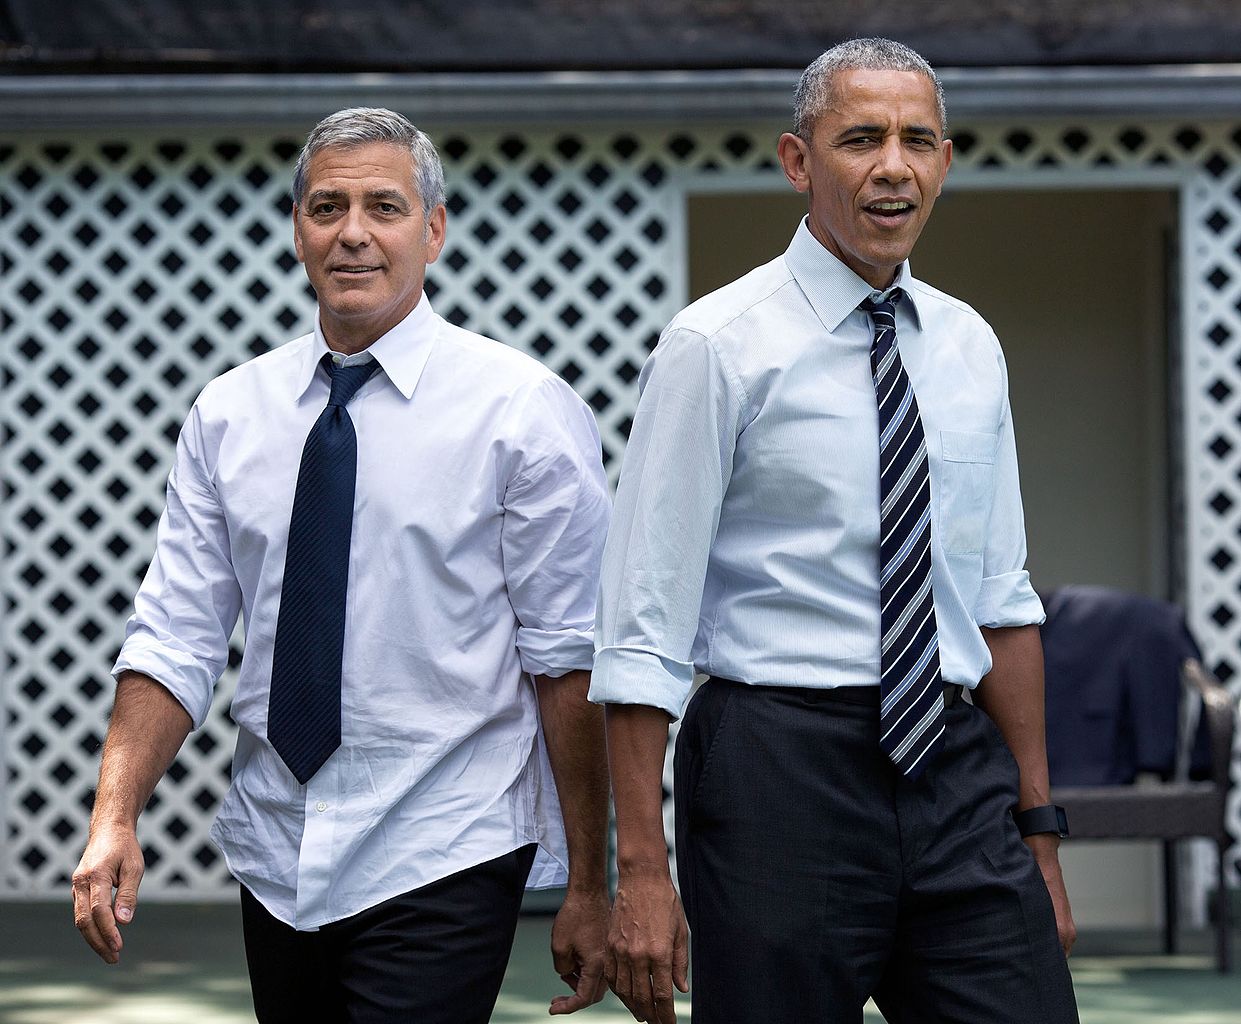 George Clooney khoe chuyện nhắn tin bậy bạ với cựu tổng thống Obama - Ảnh 2.